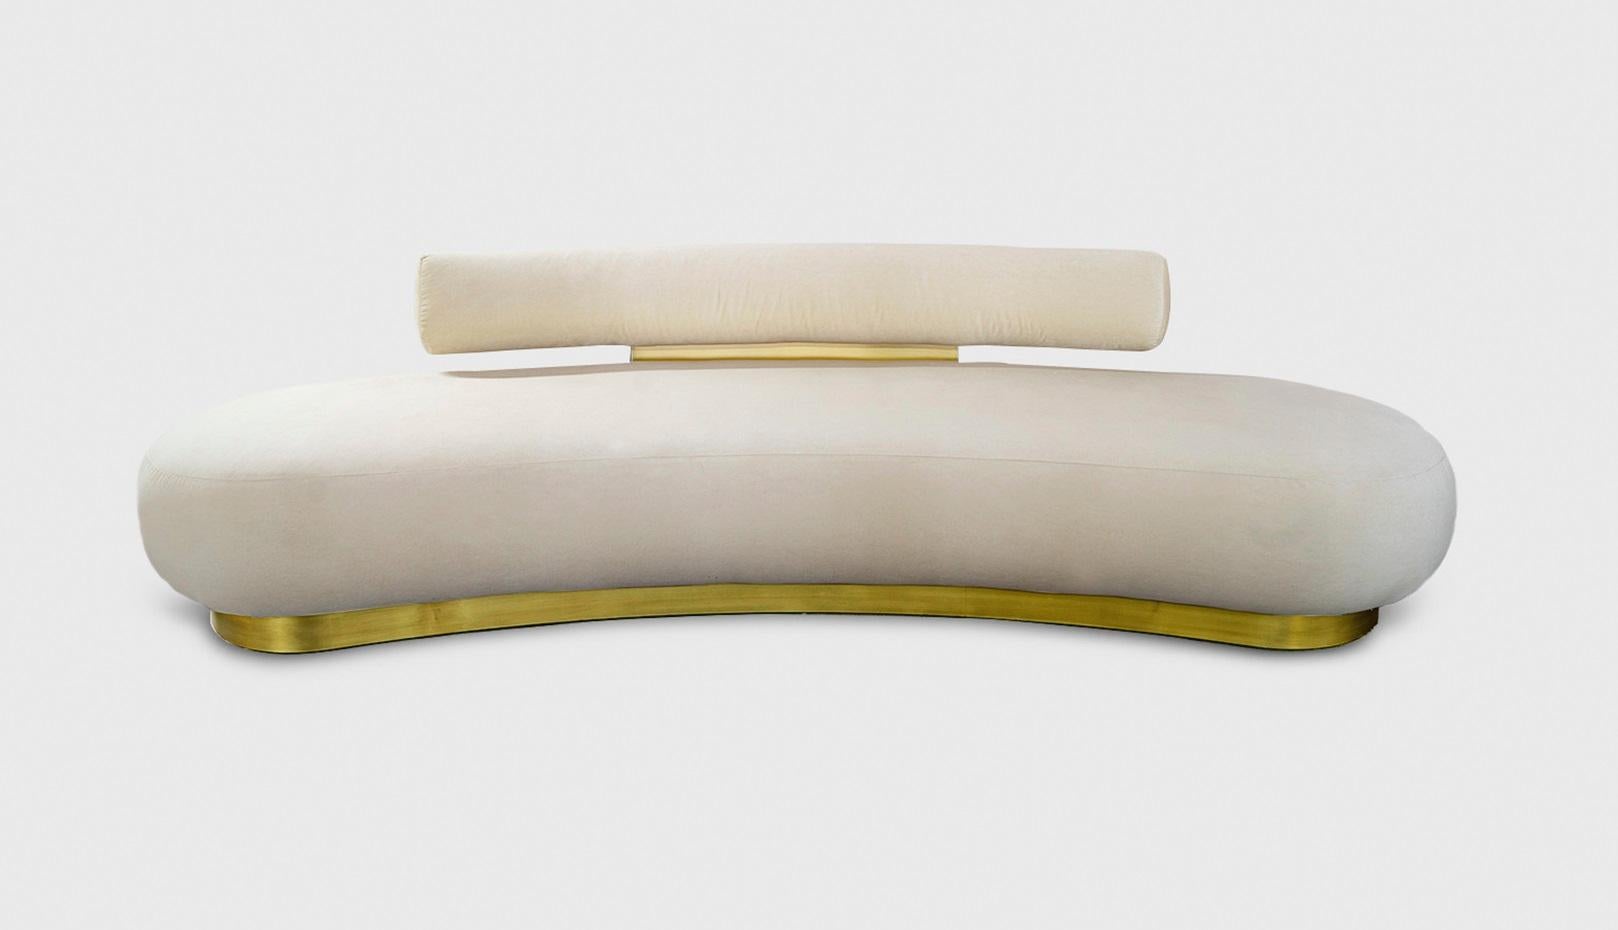 Canapé Beluga Curvo par Atra Design
Dimensions : D 270 x L 96,9 x H 70 cm.
MATERIAL : Tissu en laine de mouton Rubelli, laiton.
Disponible dans d'autres tissus et finitions en laiton.

Design/One
Nous sommes Atra, une marque de mobilier produite par